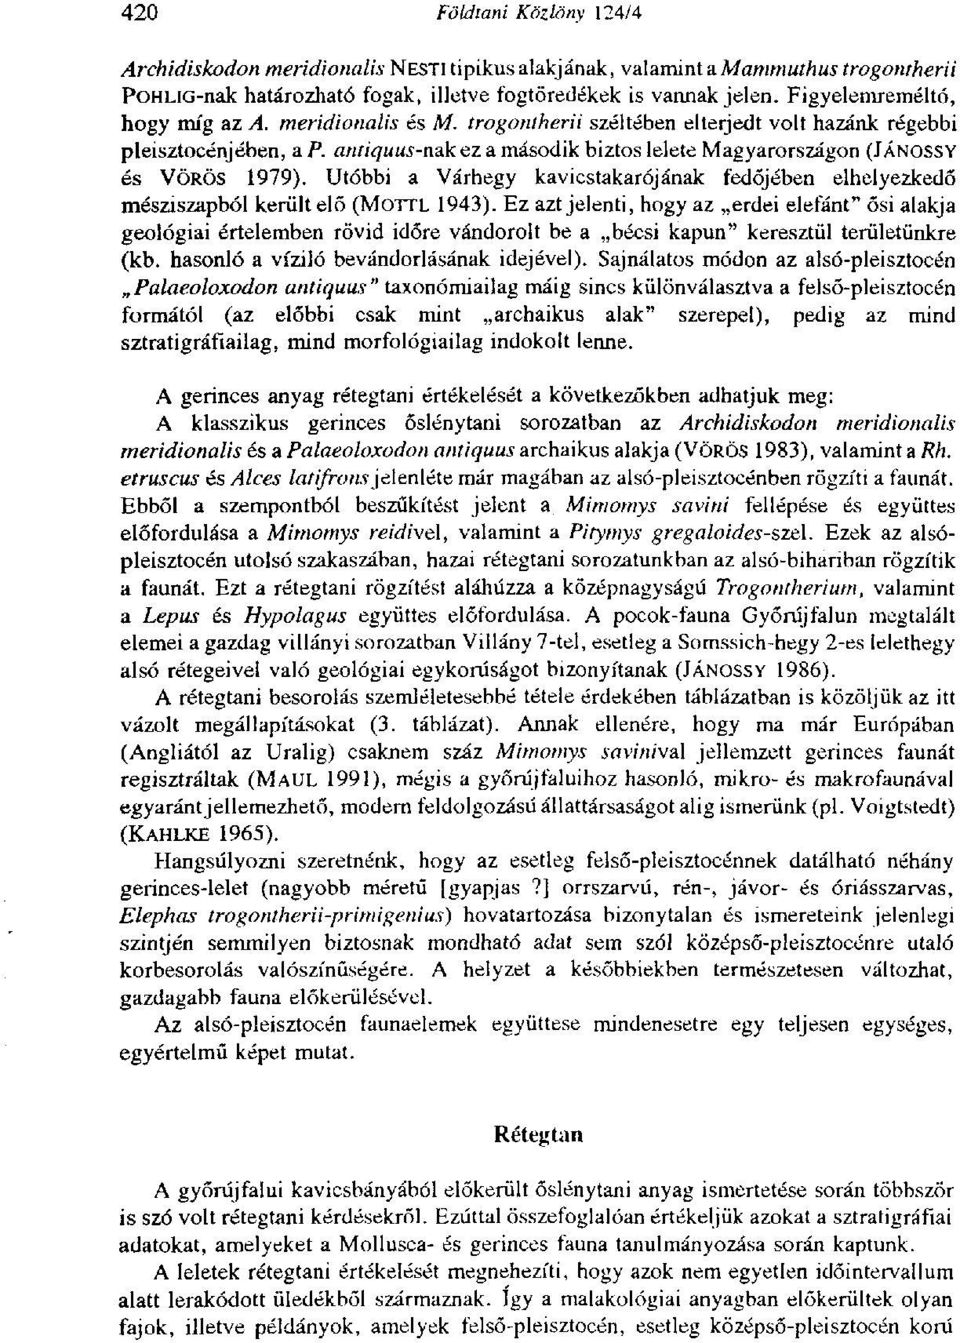 antiquus-пэк ez a második biztos lelete Magyarországon (JÁNOSSY és VÖRÖS 1979). Utóbbi a Várhegy kavicstakarójának fedőjében elhelyezkedő mésziszapból került elő (MOTTL 1943).